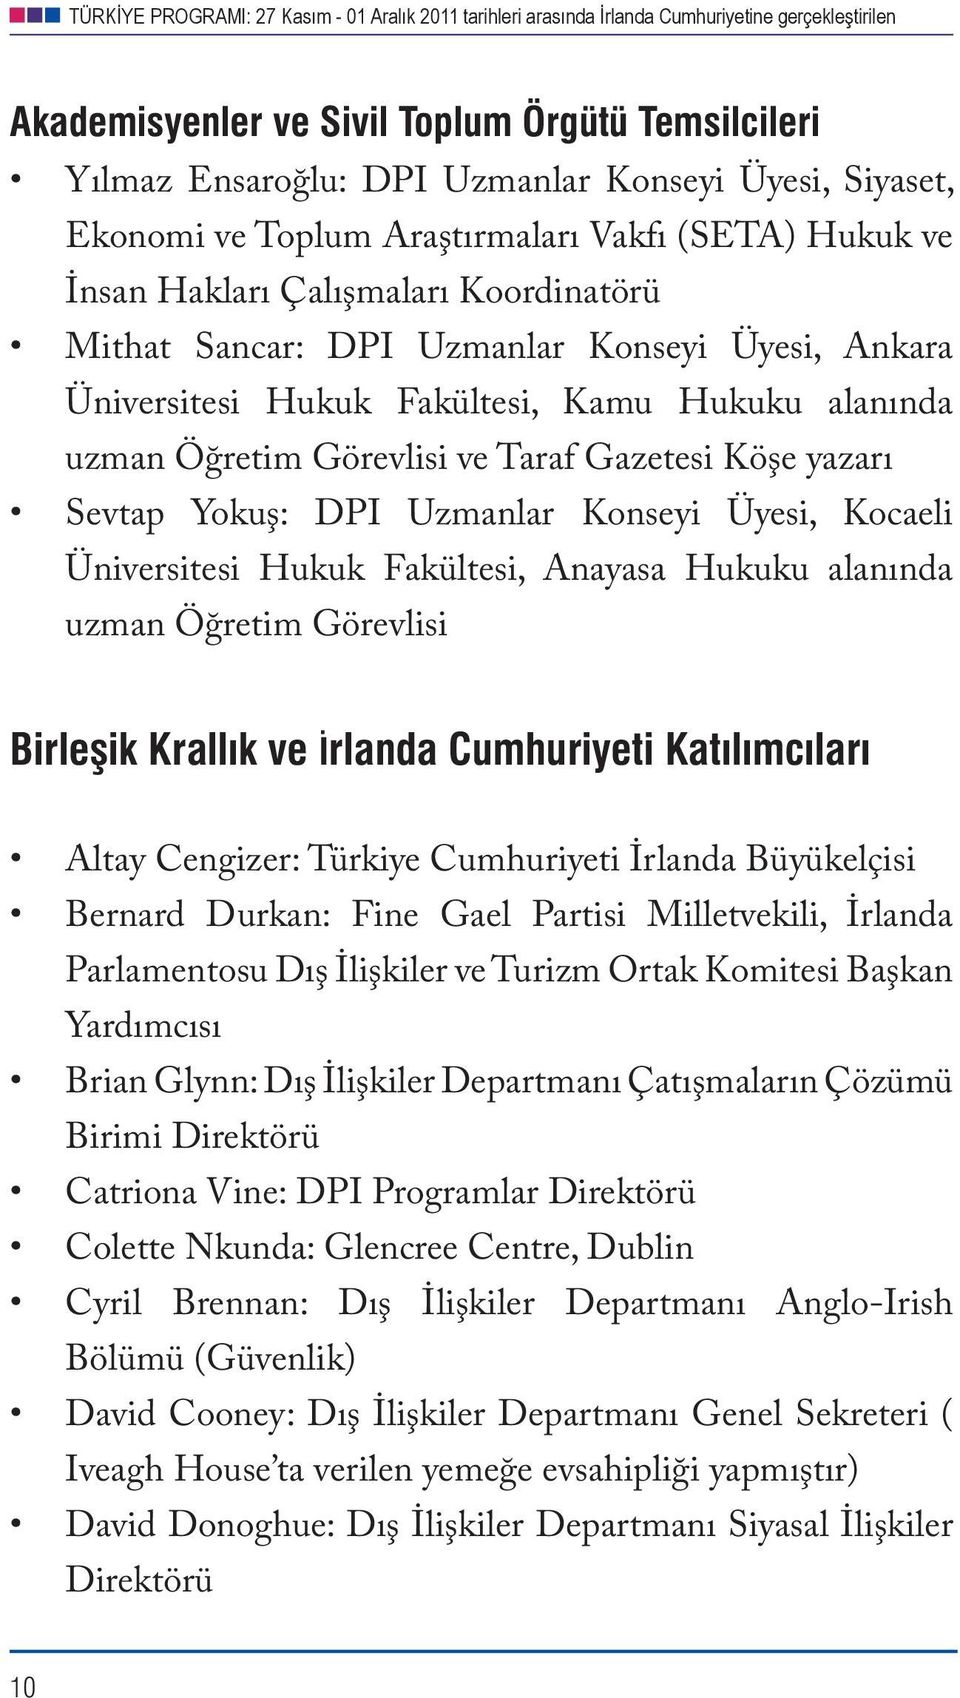 Kocaeli Üniversitesi Hukuk Fakültesi, Anayasa Hukuku alanında uzman Öğretim Görevlisi Birleşik Krallık ve İrlanda Cumhuriyeti Katılımcıları Altay Cengizer: Türkiye Cumhuriyeti İrlanda Büyükelçisi